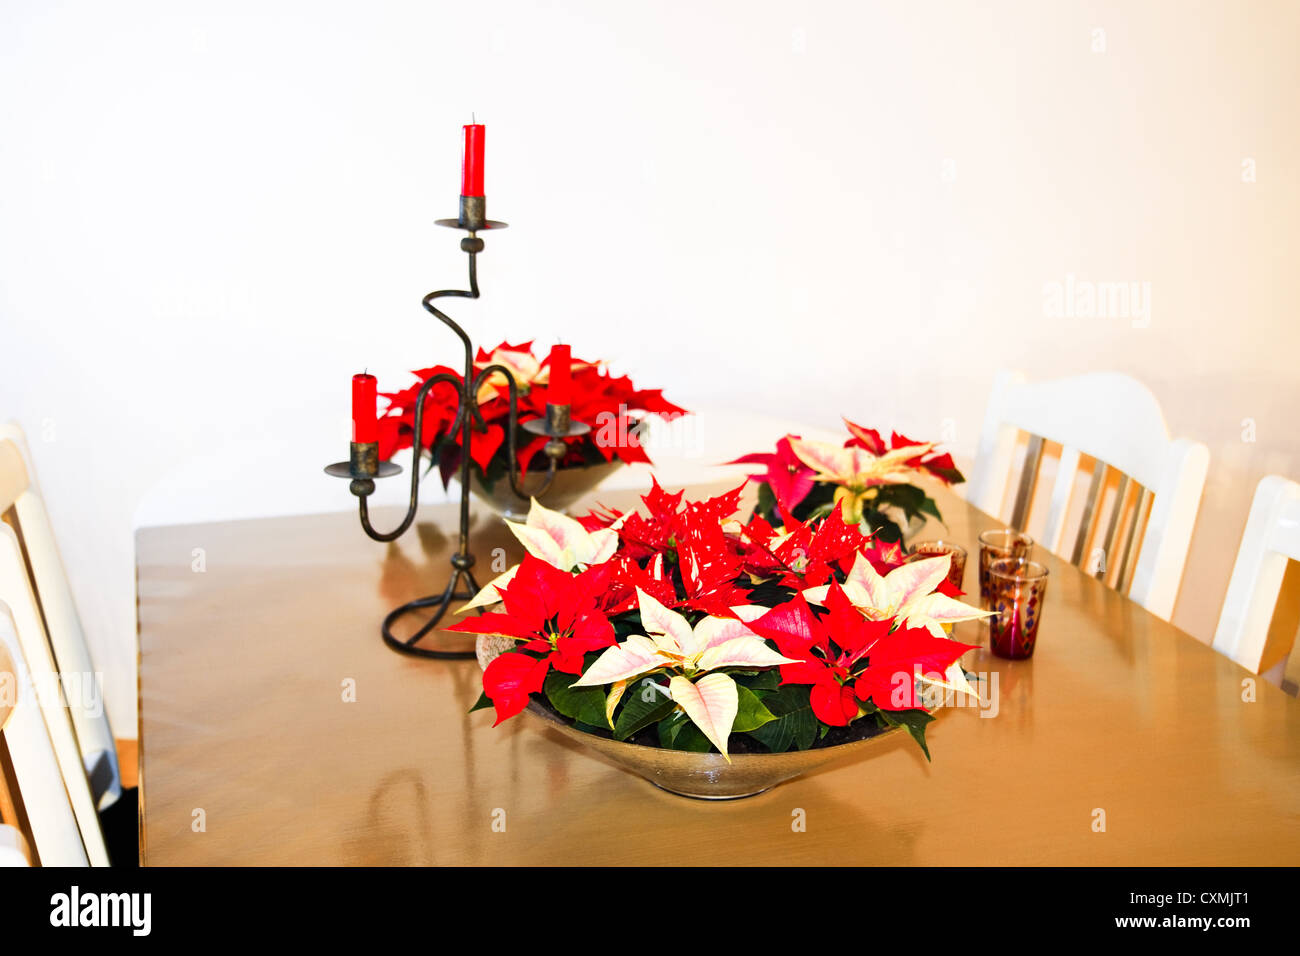 Impianto di natale, Poinsettia o Euphorbia pulcherrima come decorazione su un tavolo in dicembre - immagine orizzontale Foto Stock